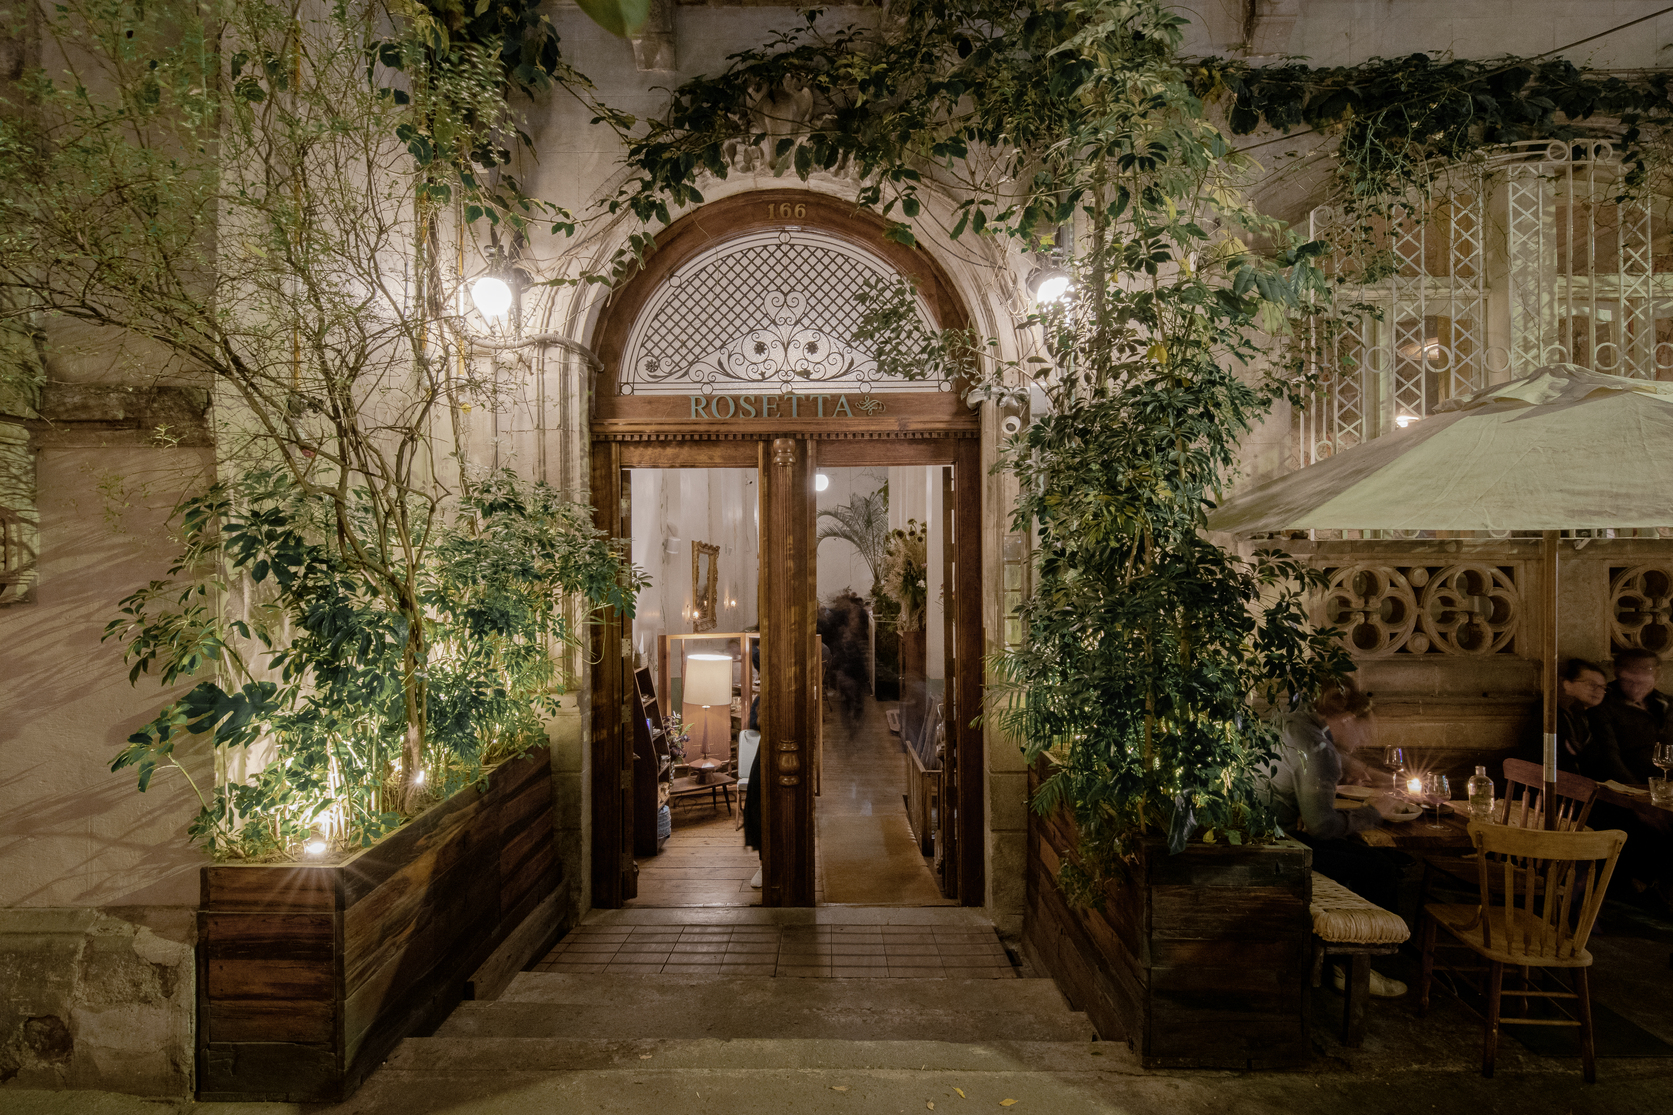 改建自一座美麗老宅邸的 Rosetta，特別在餐廳內外種植有各式綠色植栽。